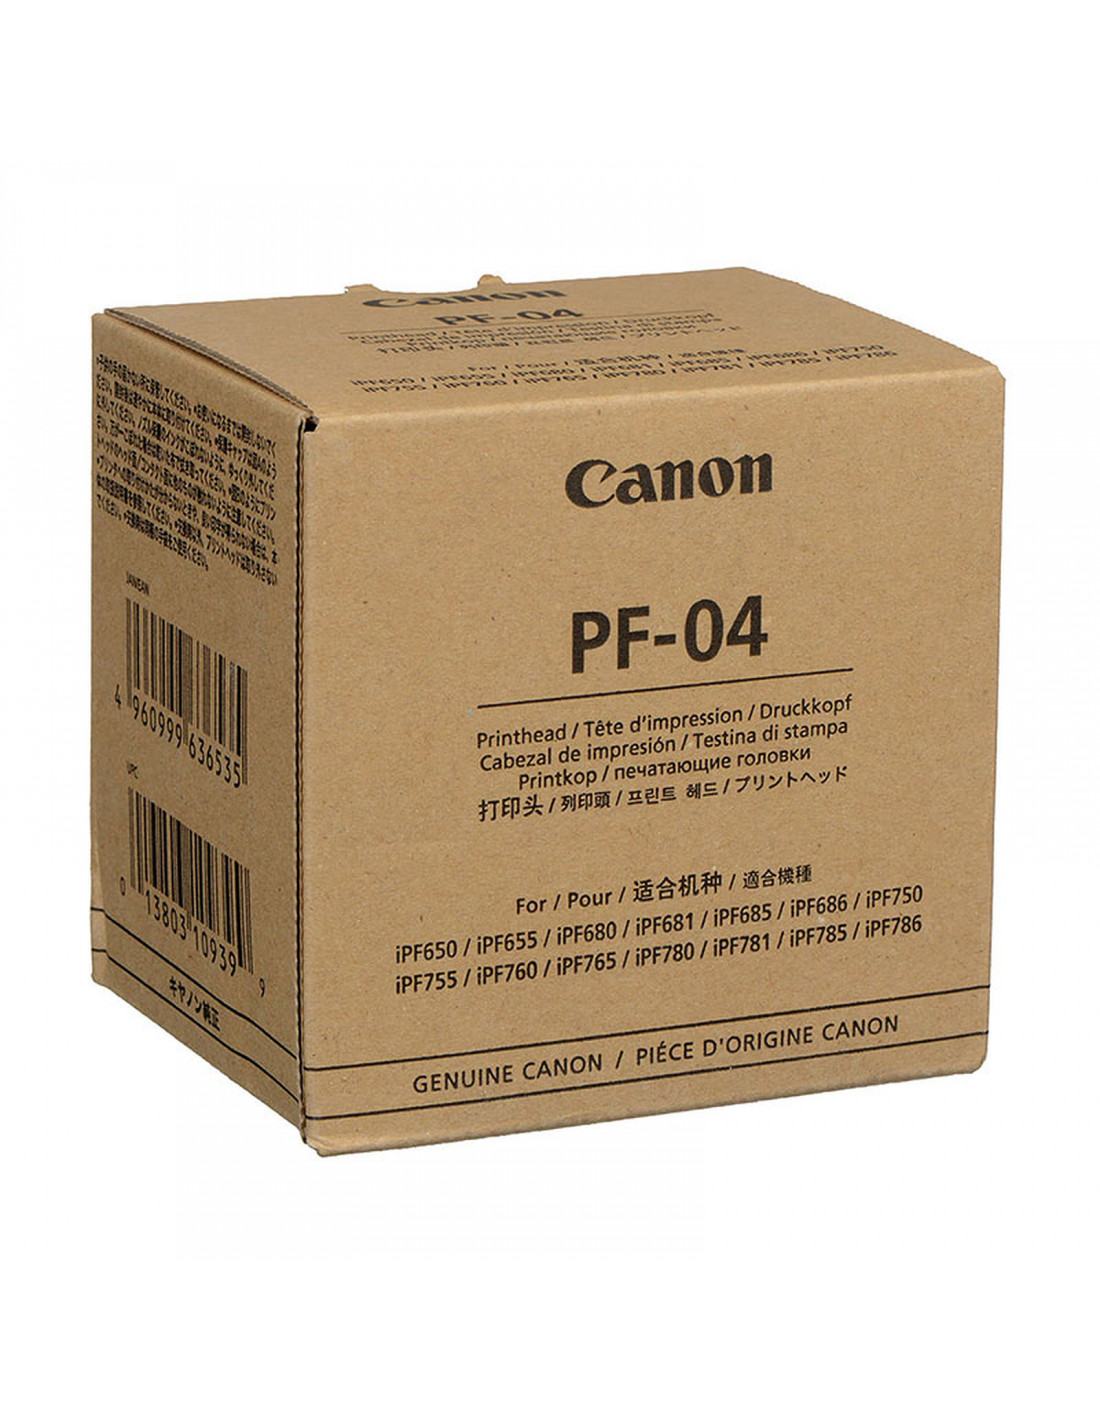 Canon PF-08 - tête d'impression